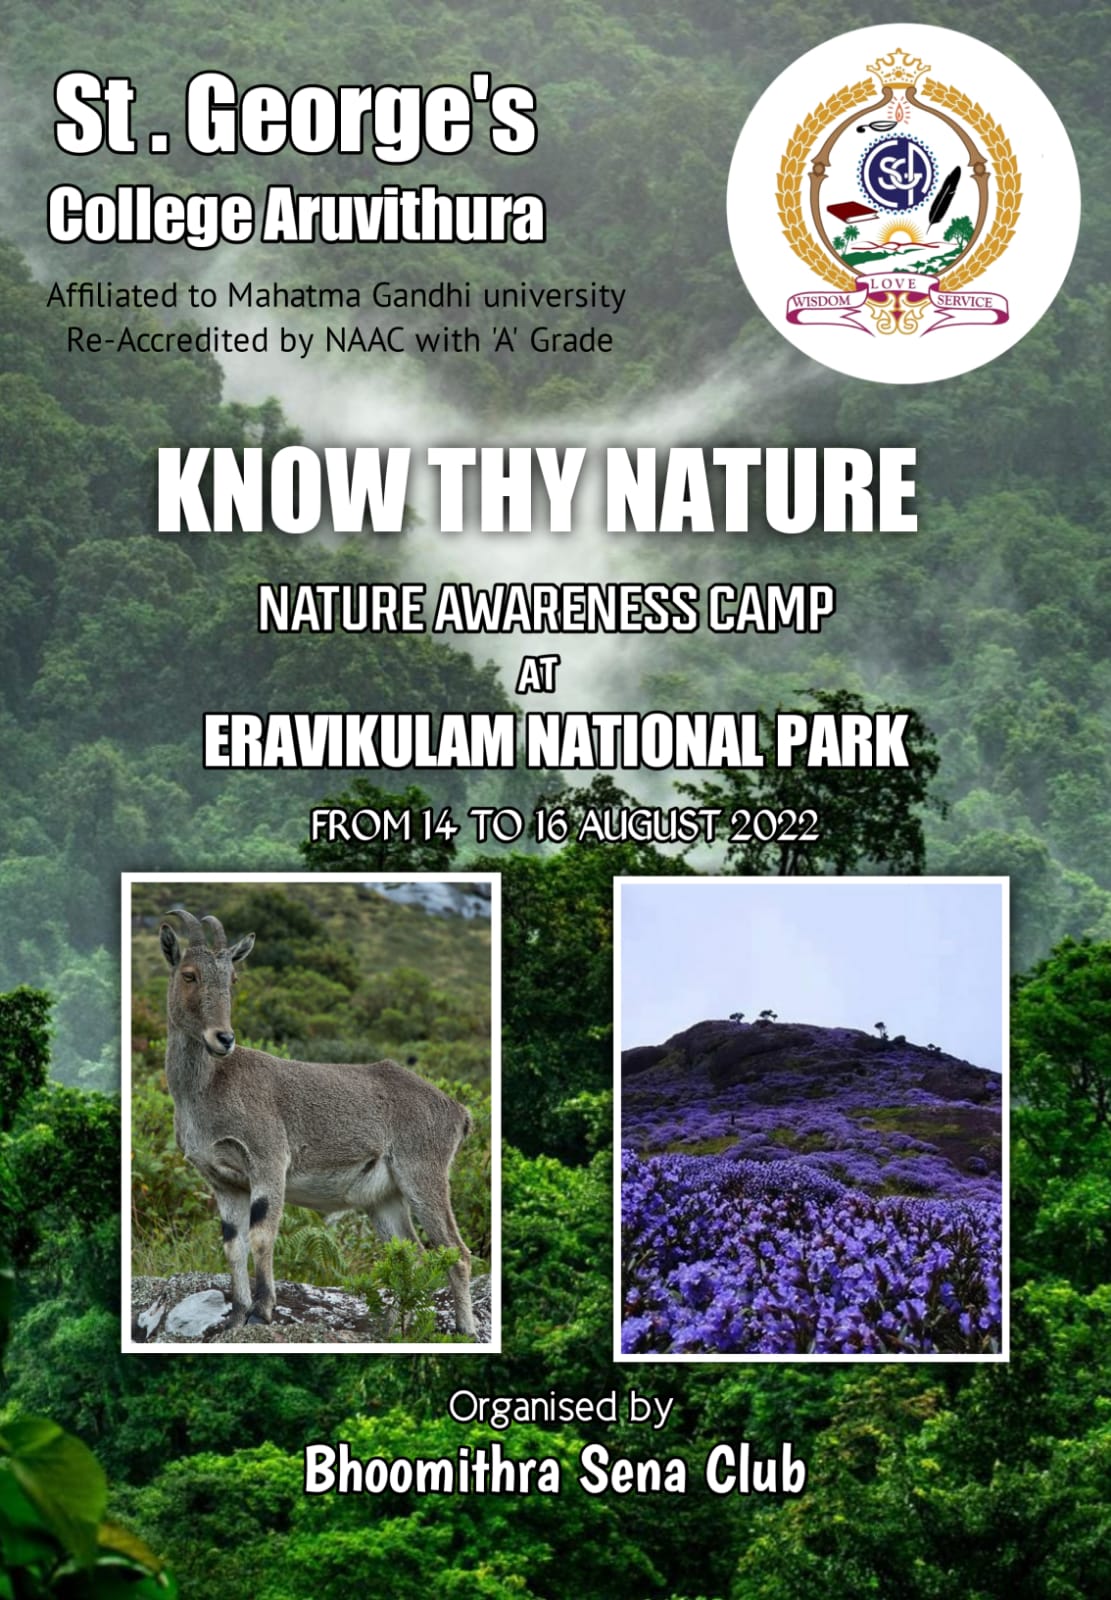 Nature Awareness Camp at Eravikulam National Park